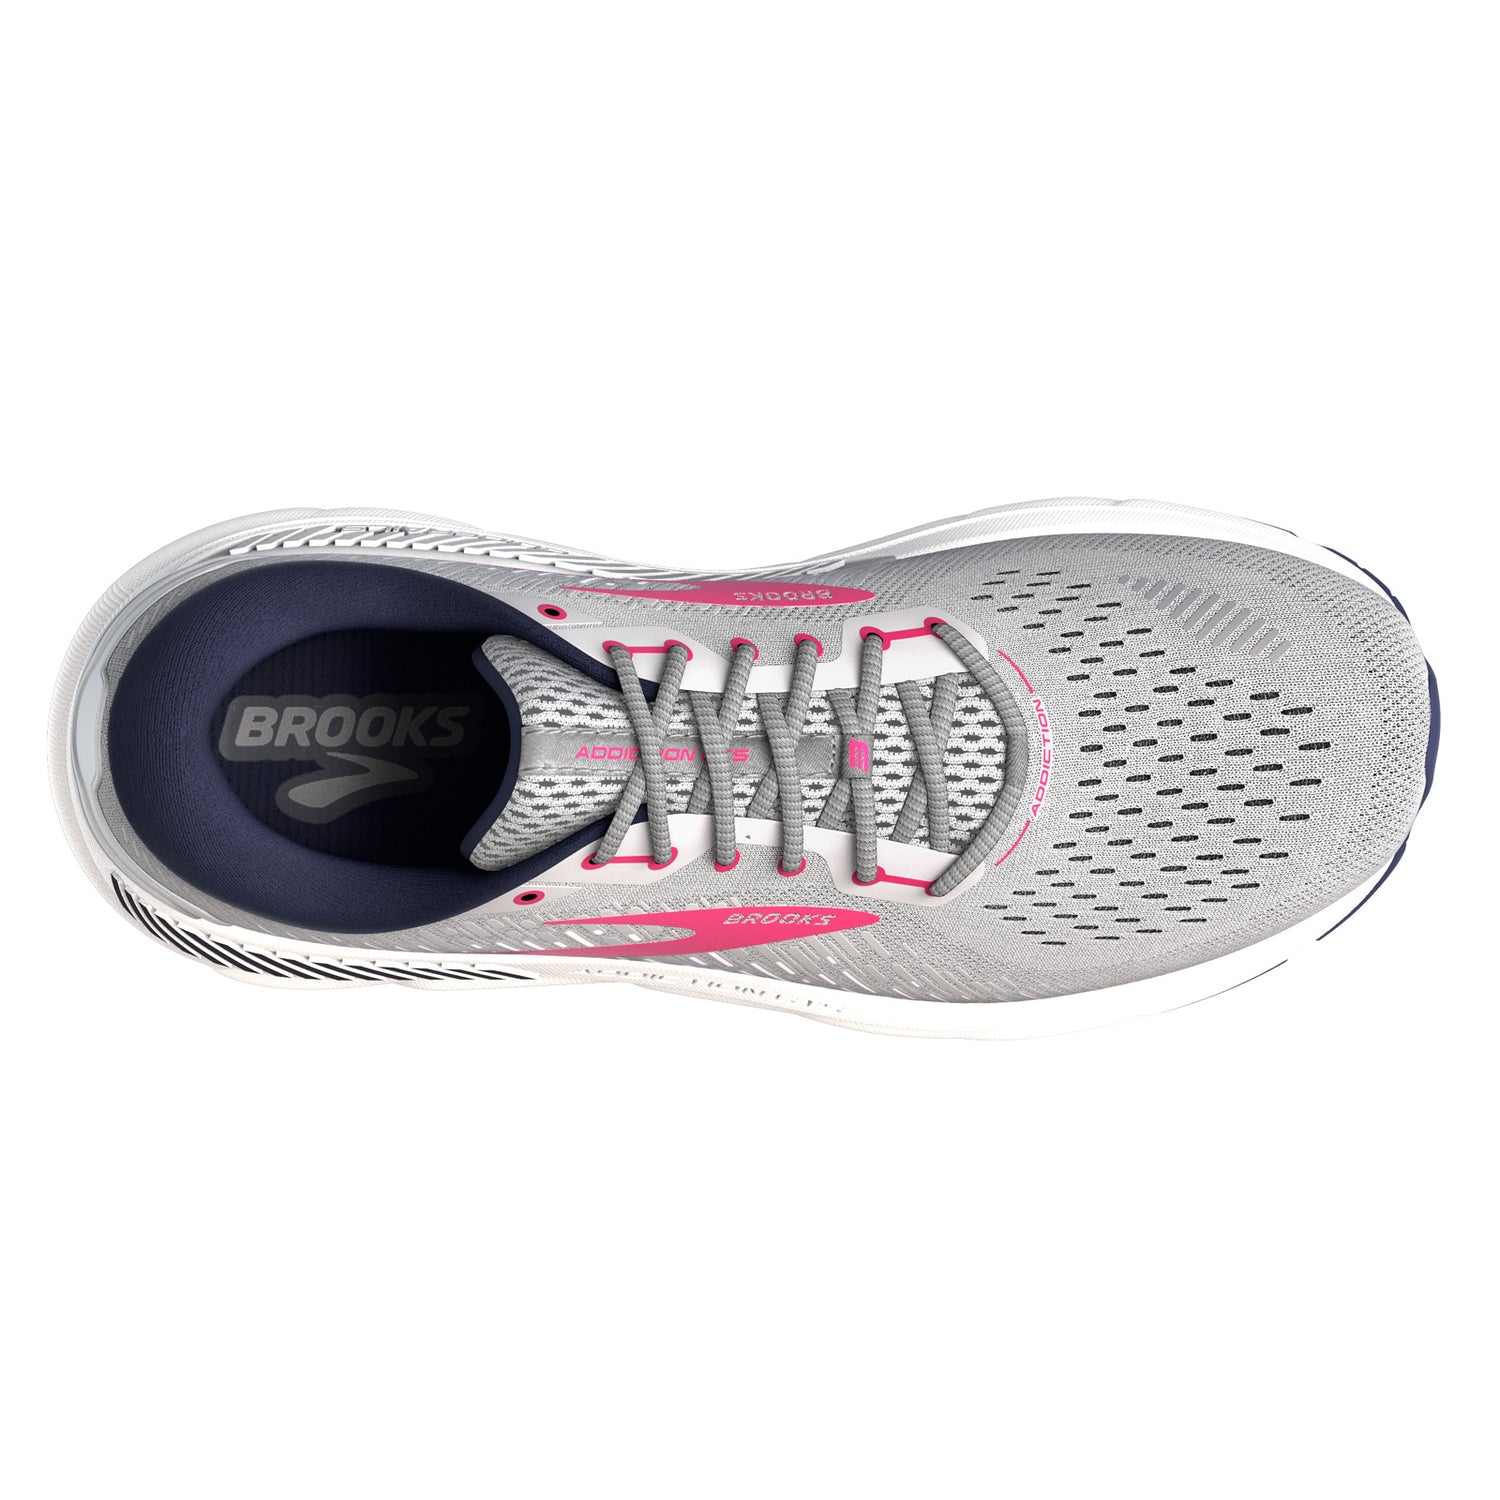 Peltz Shoes  Women's Brooks Addiction GTS 15 Running Shoe - Wide Width Oyster/Rose 120352 1D 054